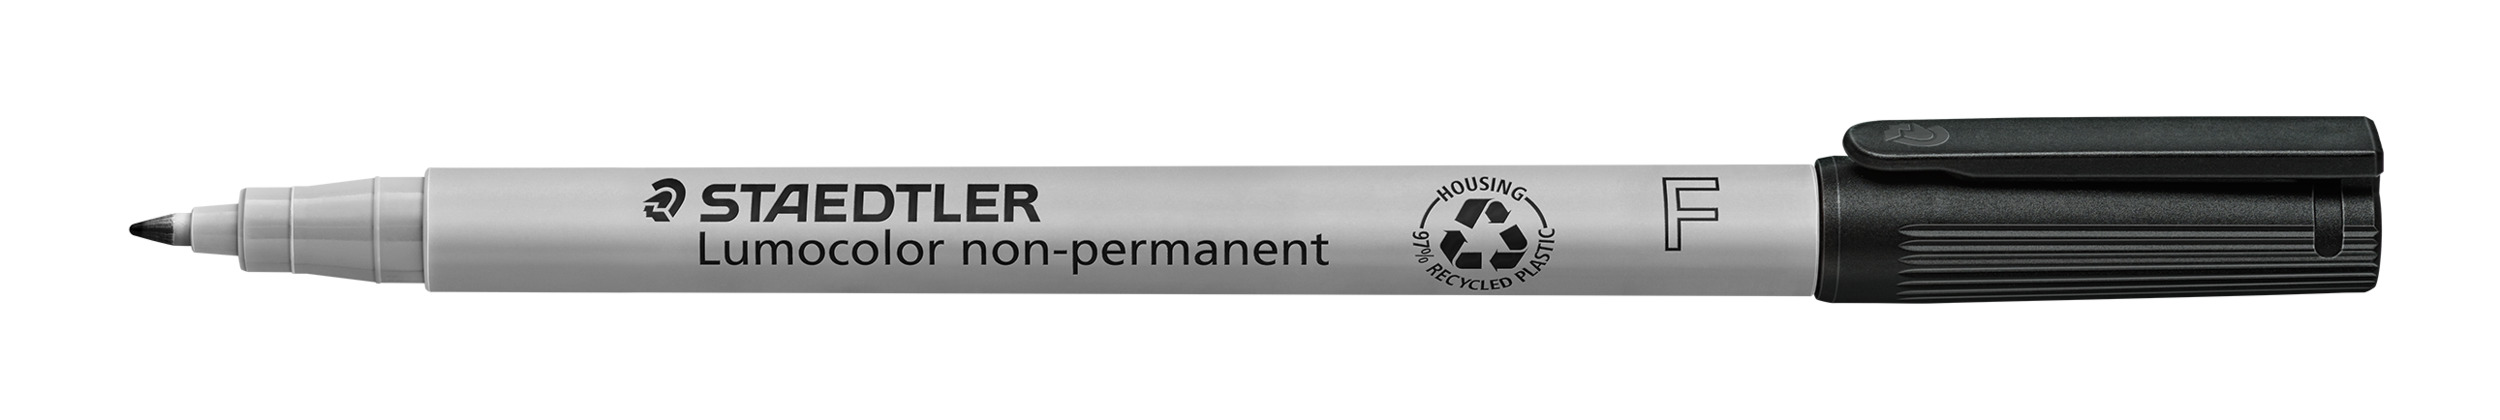 STAEDTLER® OH-Stift, Lumocolor® 316, F, nachfüllbar, non-permanent, Rundspitze, 0,6 mm, Schaftfarbe: grau, Schreibfarbe: schwarz